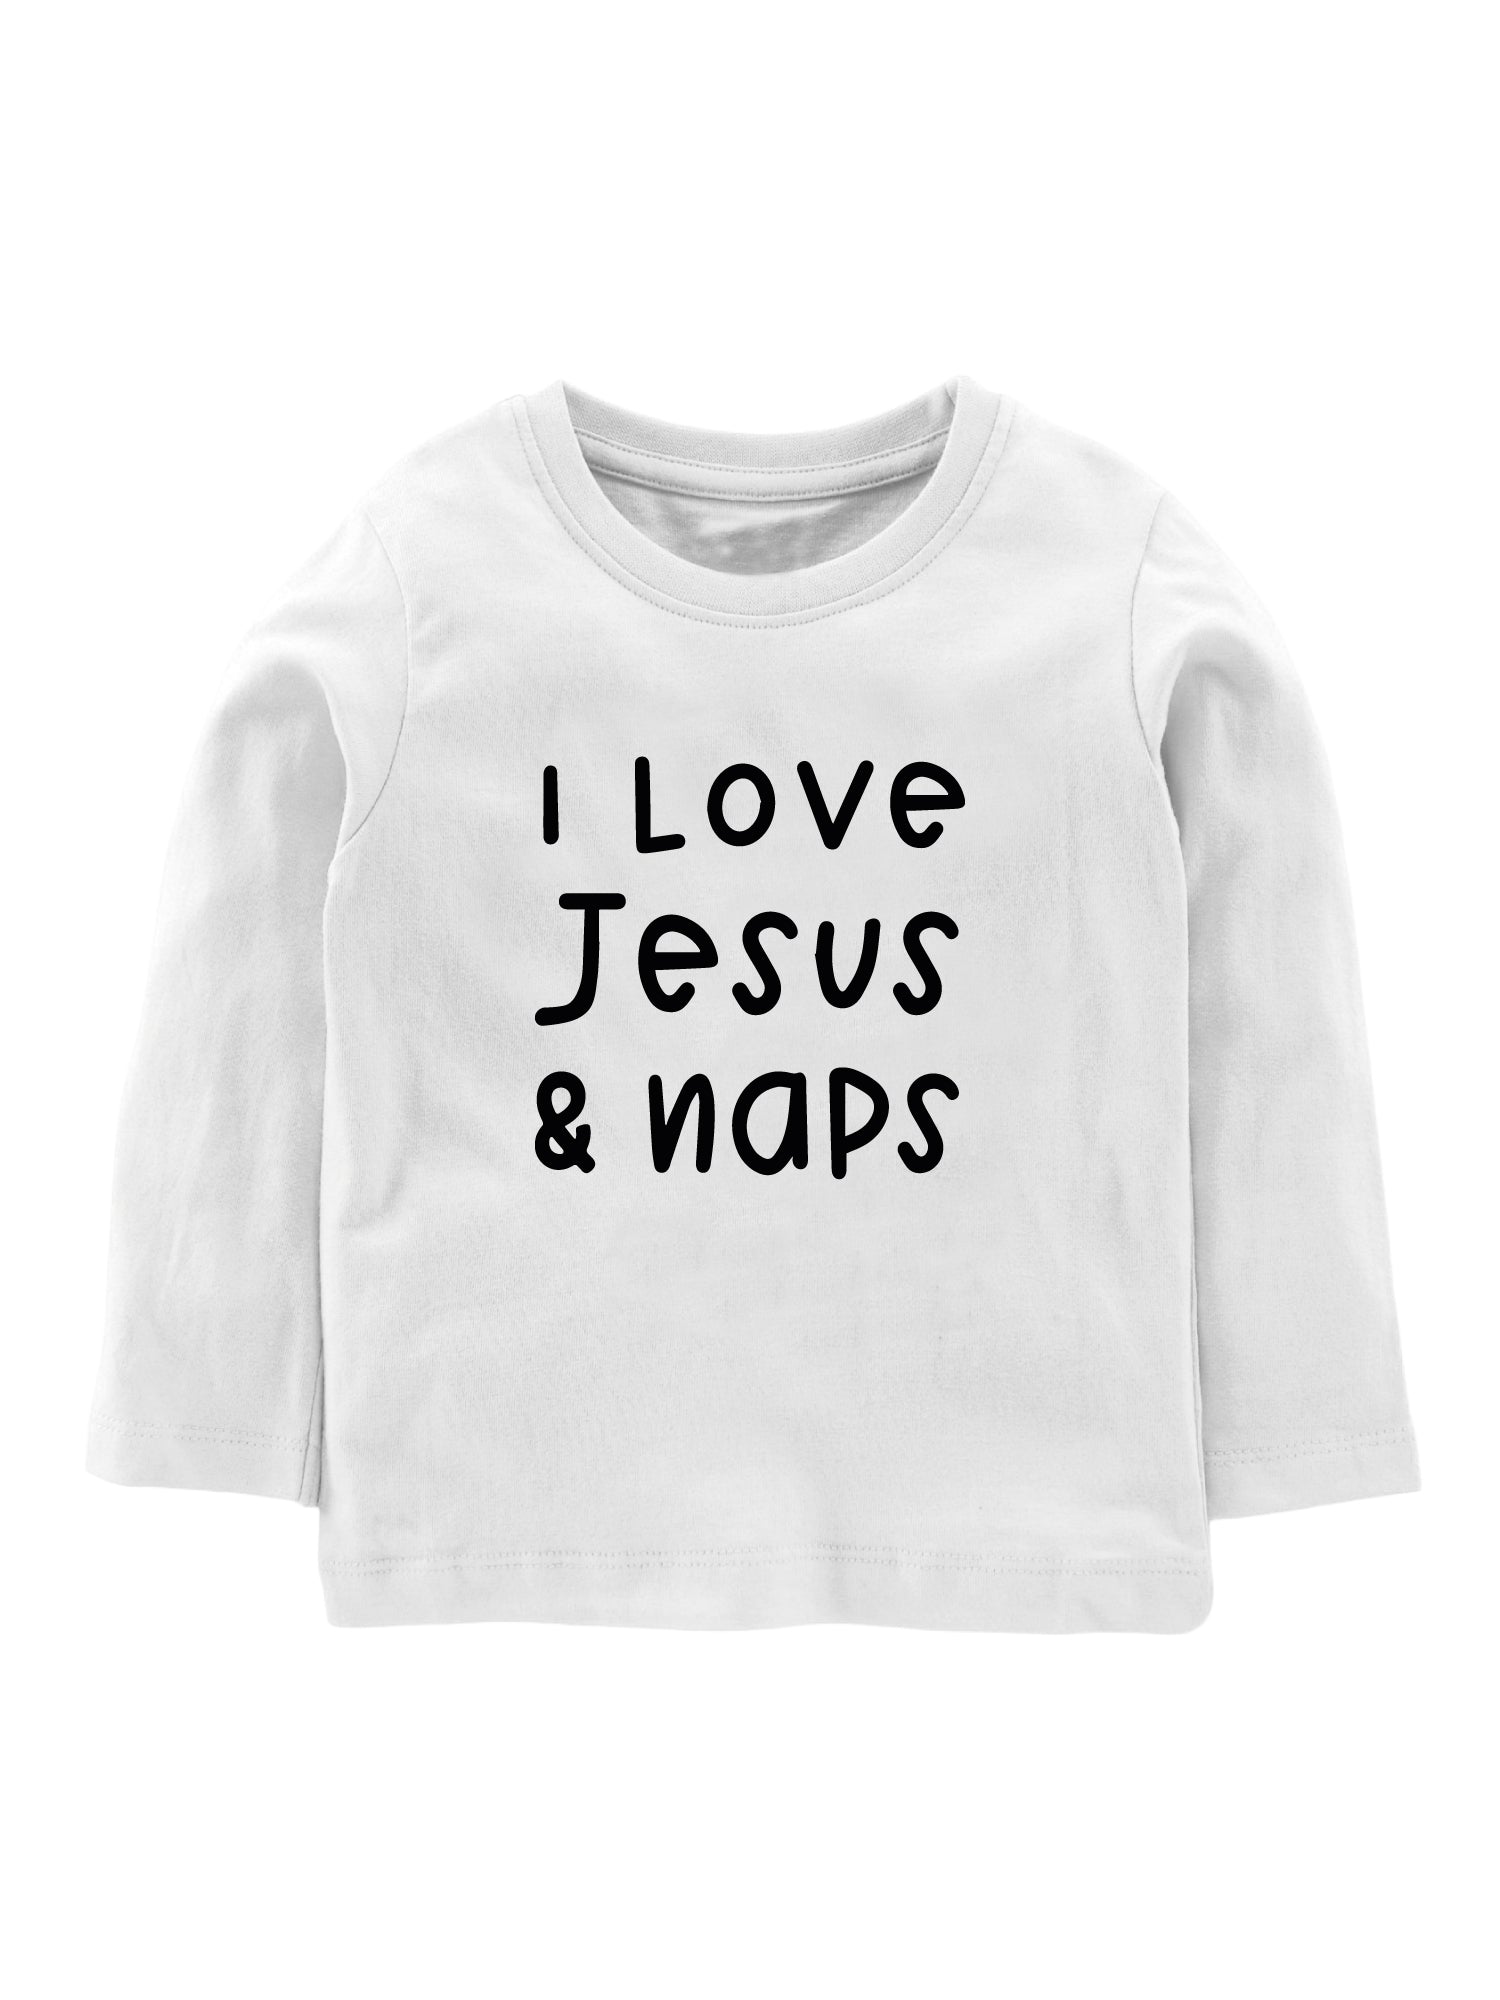 I love Jesus and Naps - Tee